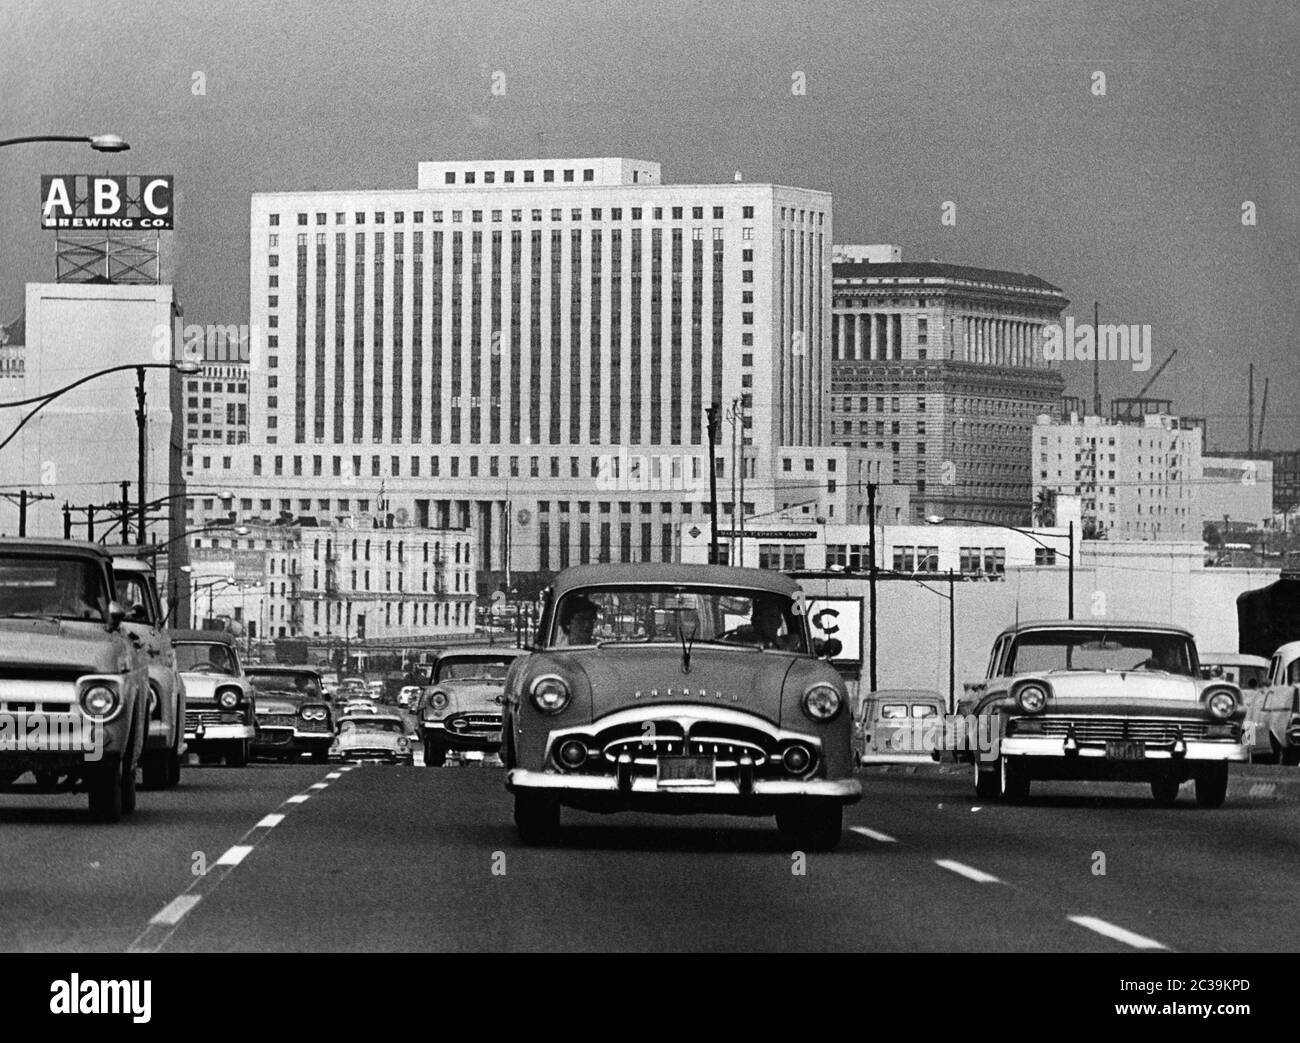 Dichter Verkehr auf dem Santa Ana Freeway in Los Angeles in den 1960er Jahren mit den typischen Karosserien der 50er Jahre. Auf der linken oberen Seite befindet sich ein Schild der ABC Brewing Company vor den Wolkenkratzern des Stadtzentrums. Dahinter, in der Mitte des Bildes, befindet sich das Federal Courthouse Building (Sitz des Los Angeles Superior Court). Rechts dahinter befindet sich das Gebäude der Justizhalle. Stockfoto